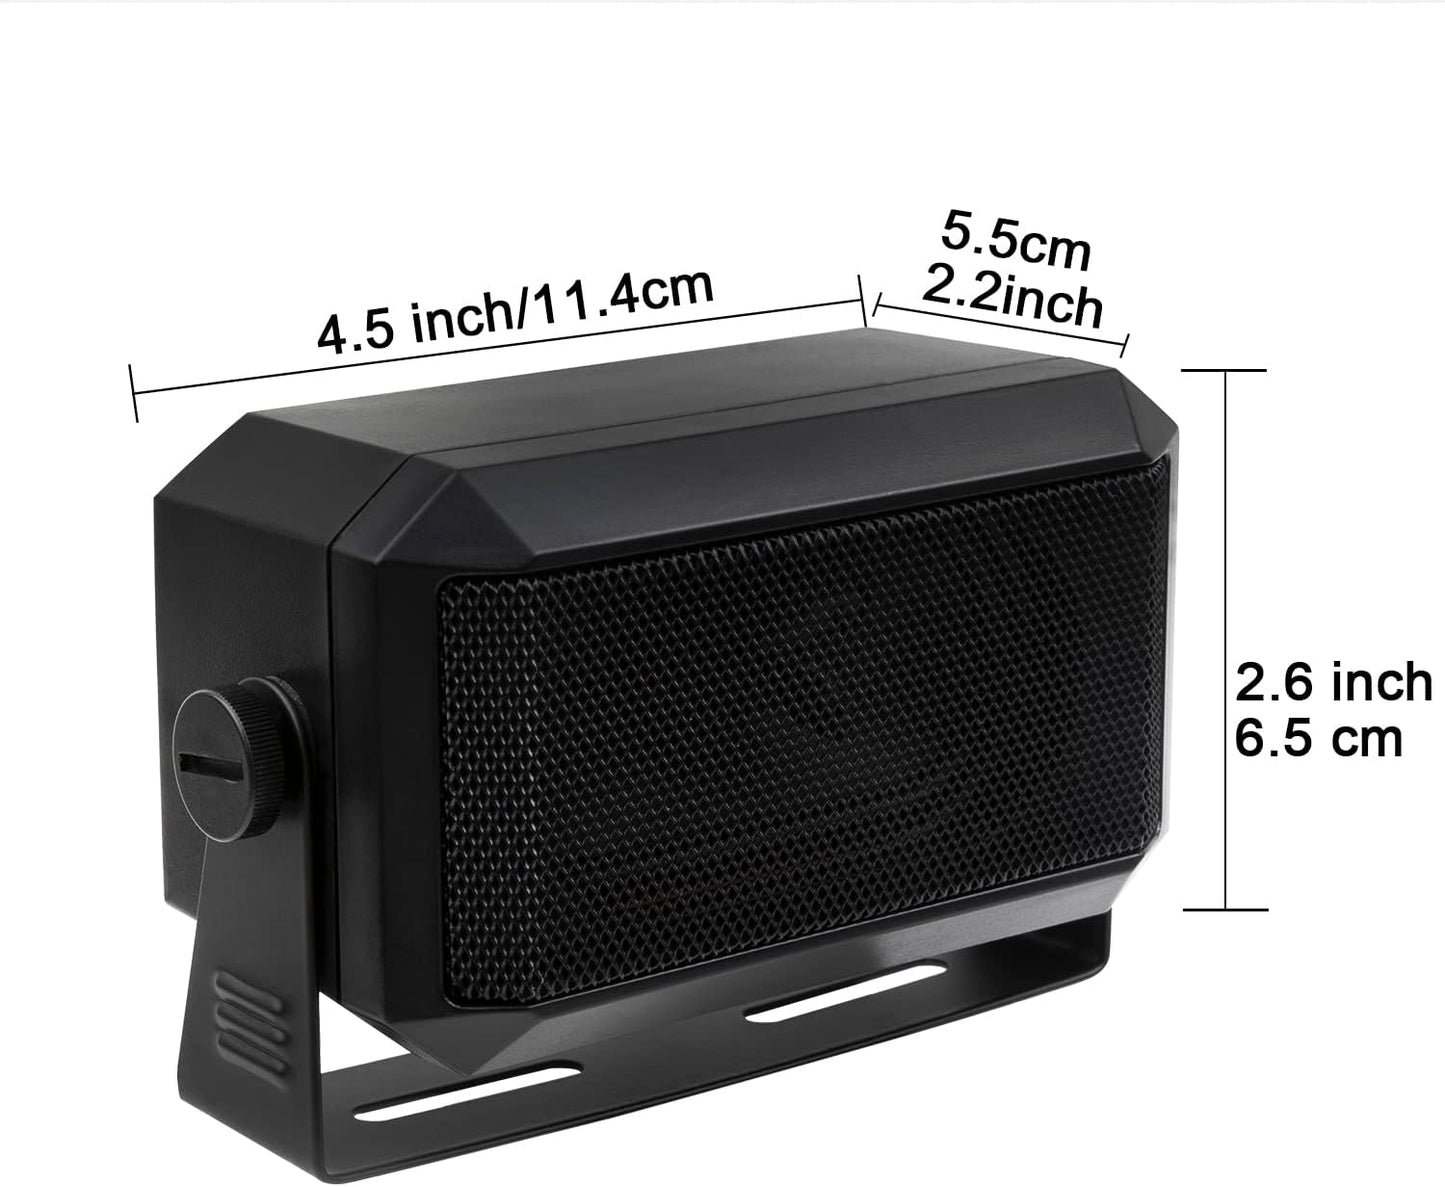 Rectangular External Communications Speaker for Ham Radio or CB & Scanners, 5 Watt